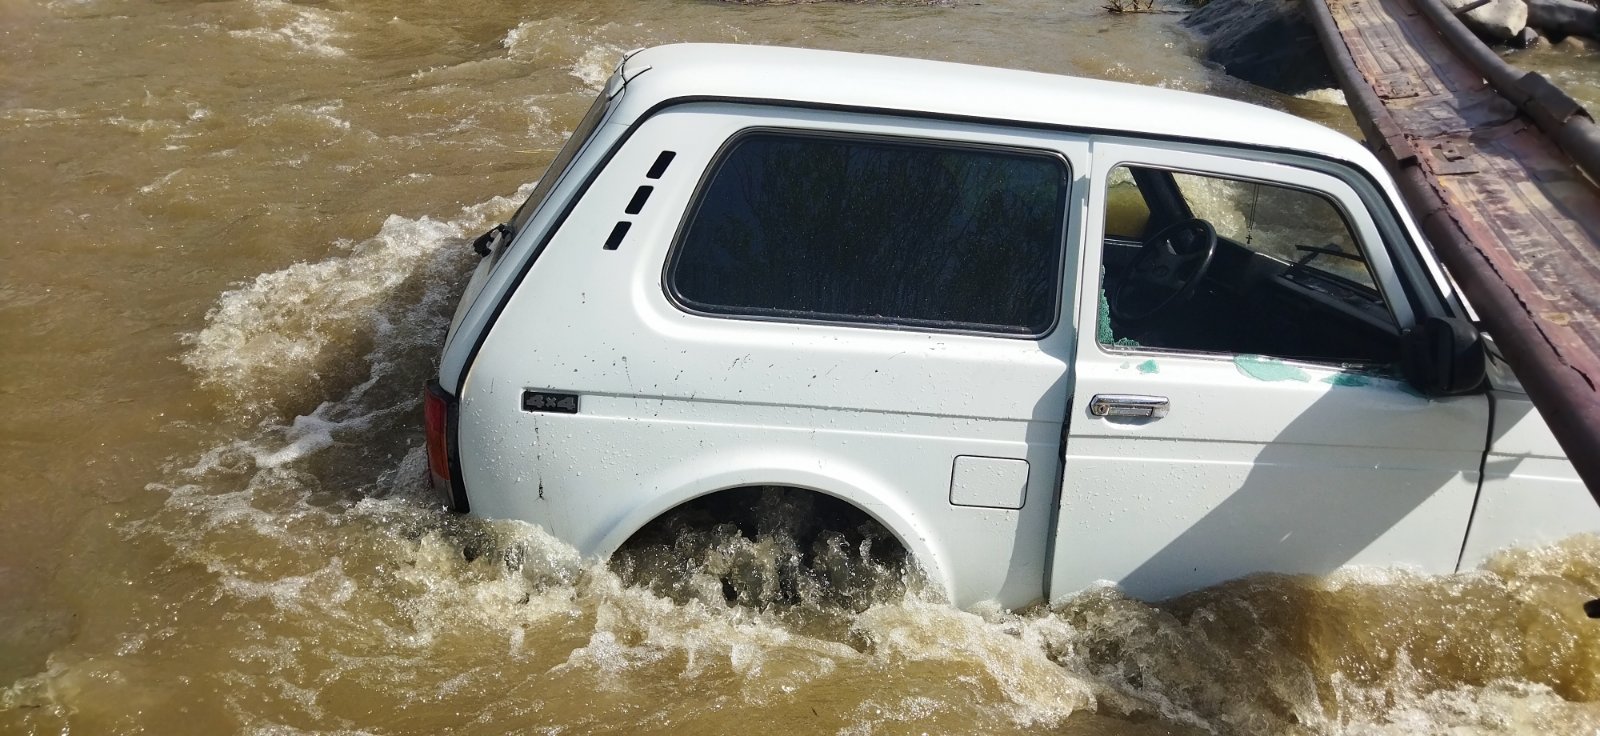 Ավտոմեքենան Վեդի գետի միջնամասում արգելափակվել են. օգնել են փրկարարները (տեսանյութ)